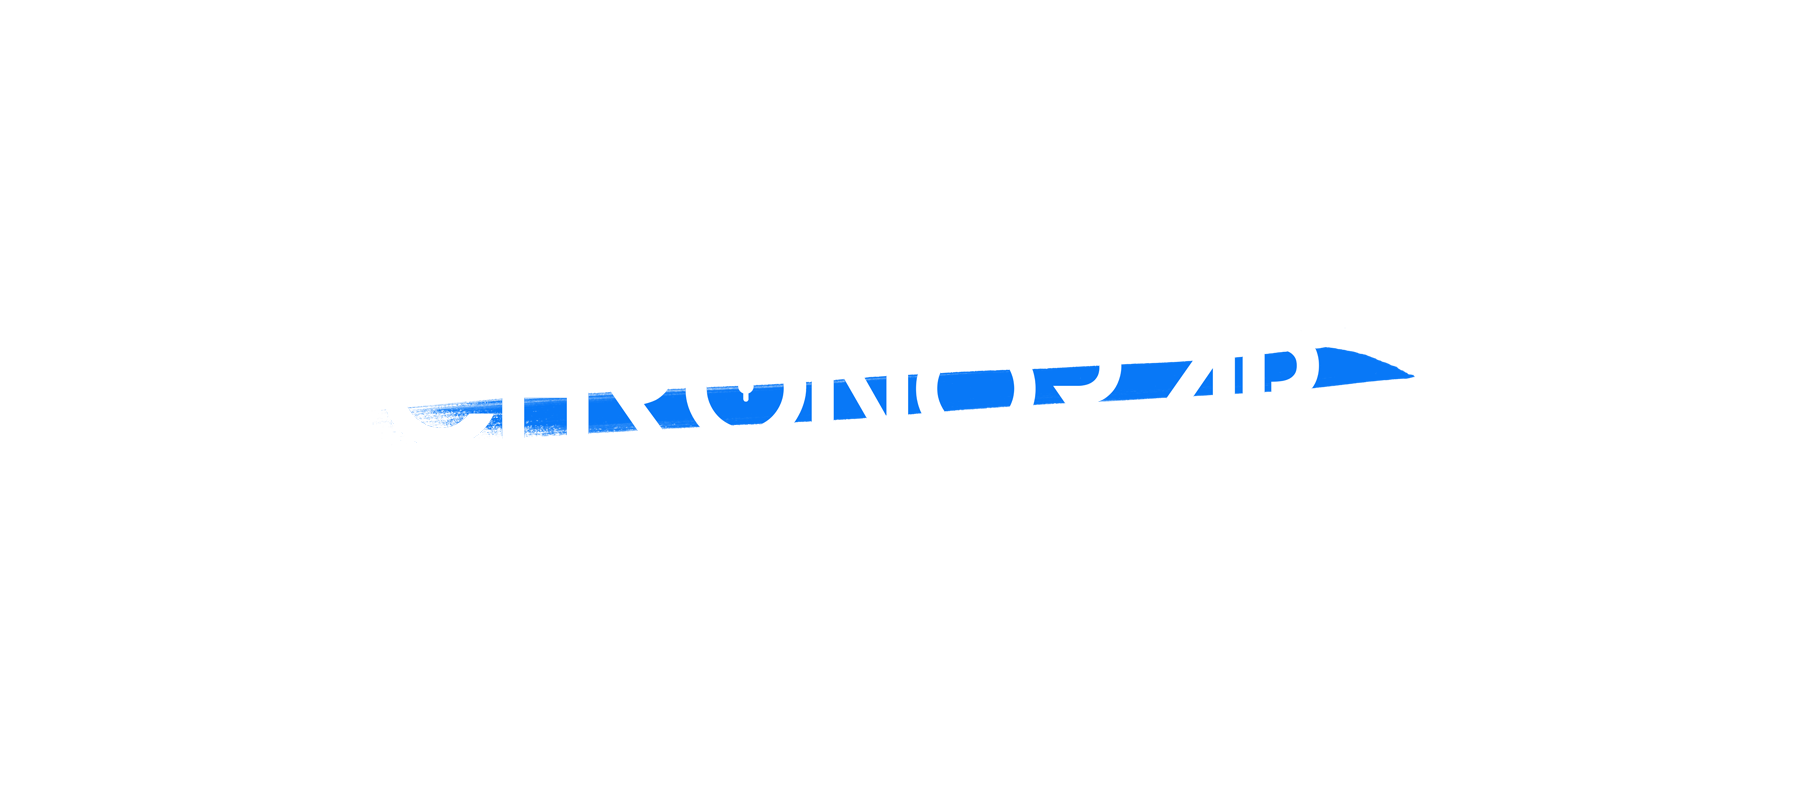 chronorap site rap francais page des ratistes marseillais